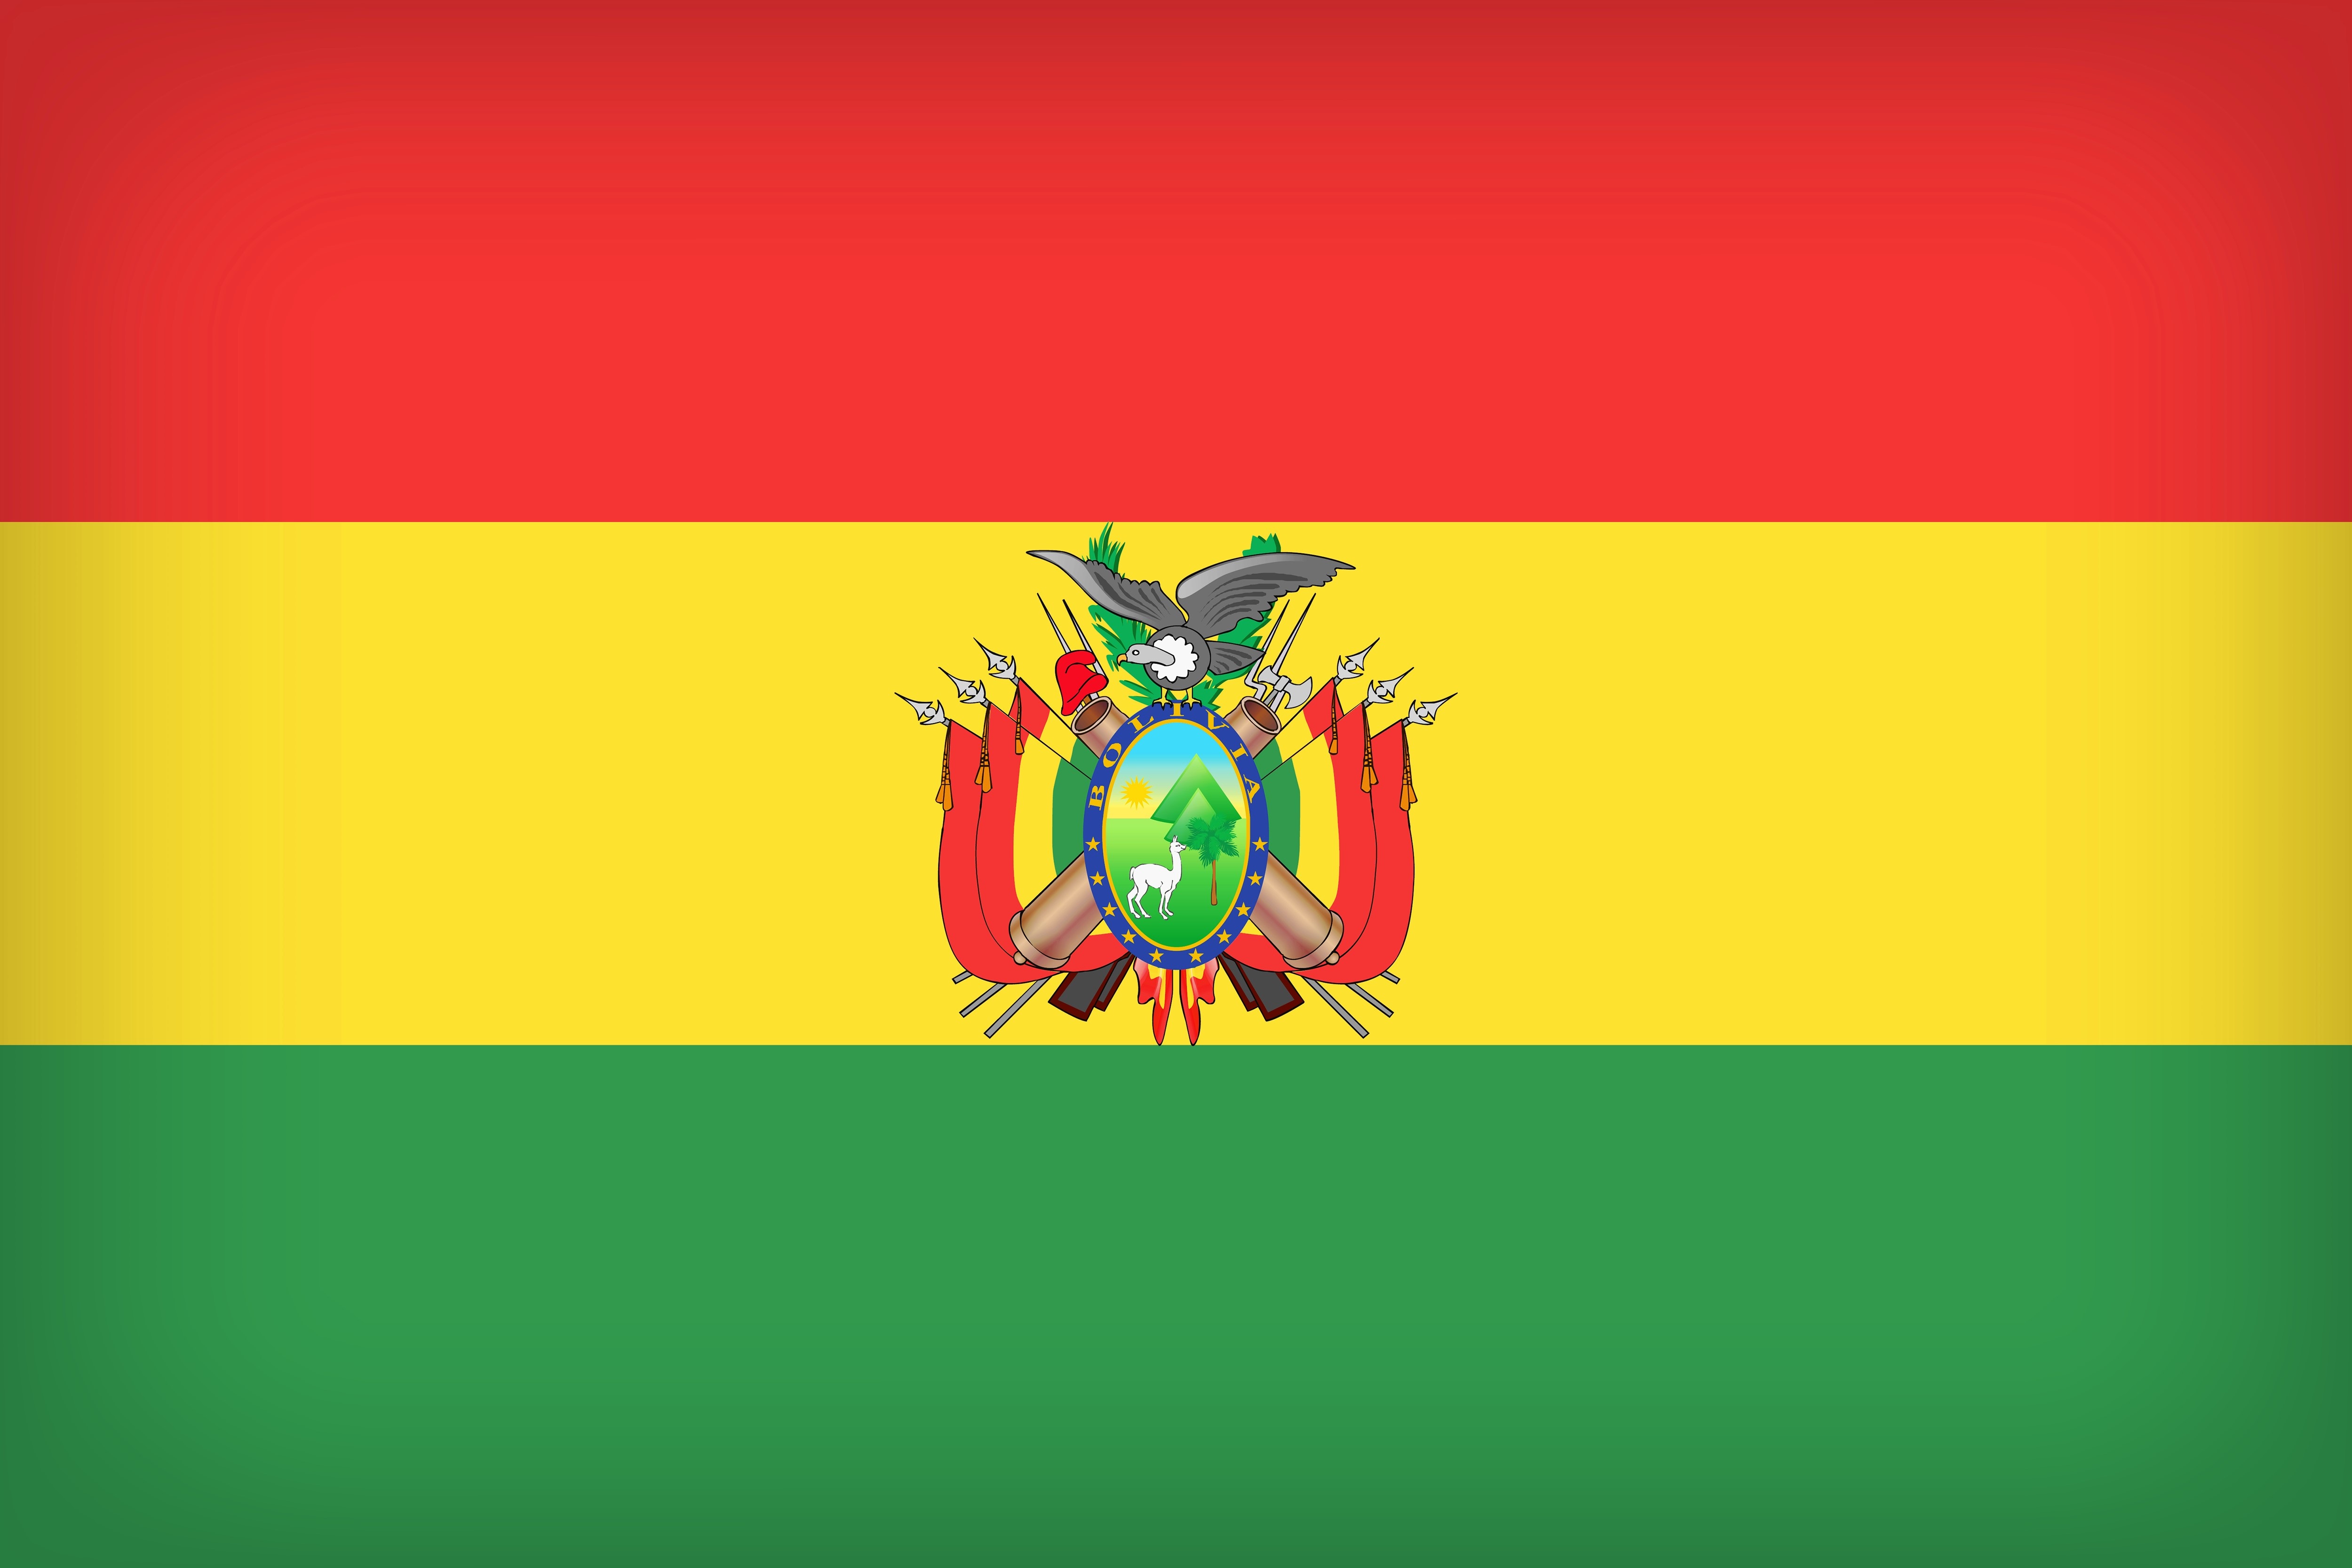 Скачать обои Флаг Боливии на телефон бесплатно